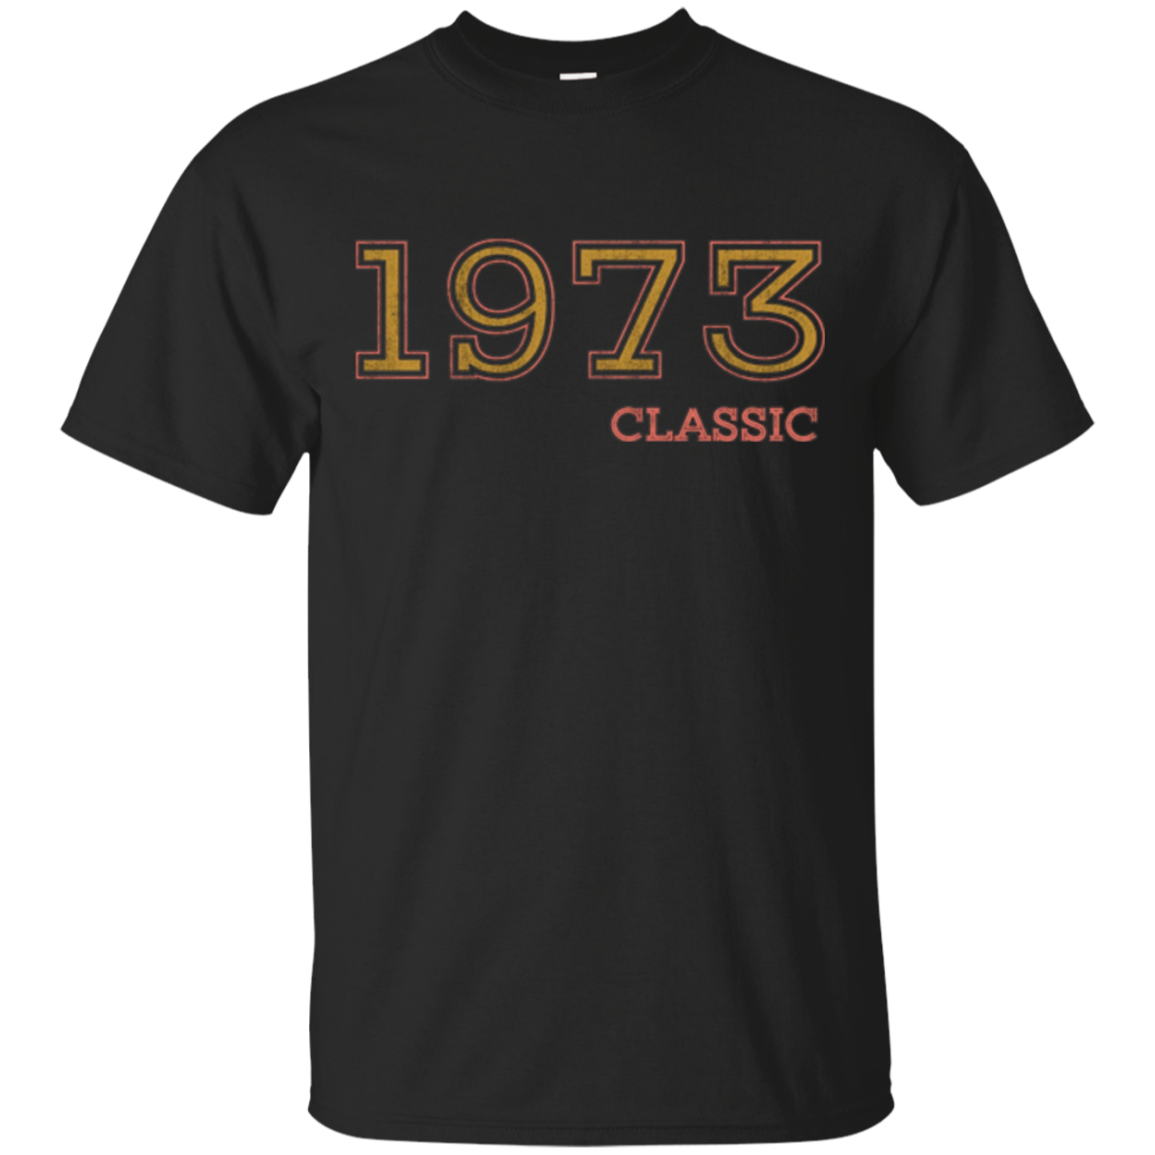 44th Birthday Vintage Tshirt, Classic 1973 Shirt, Gift Idea